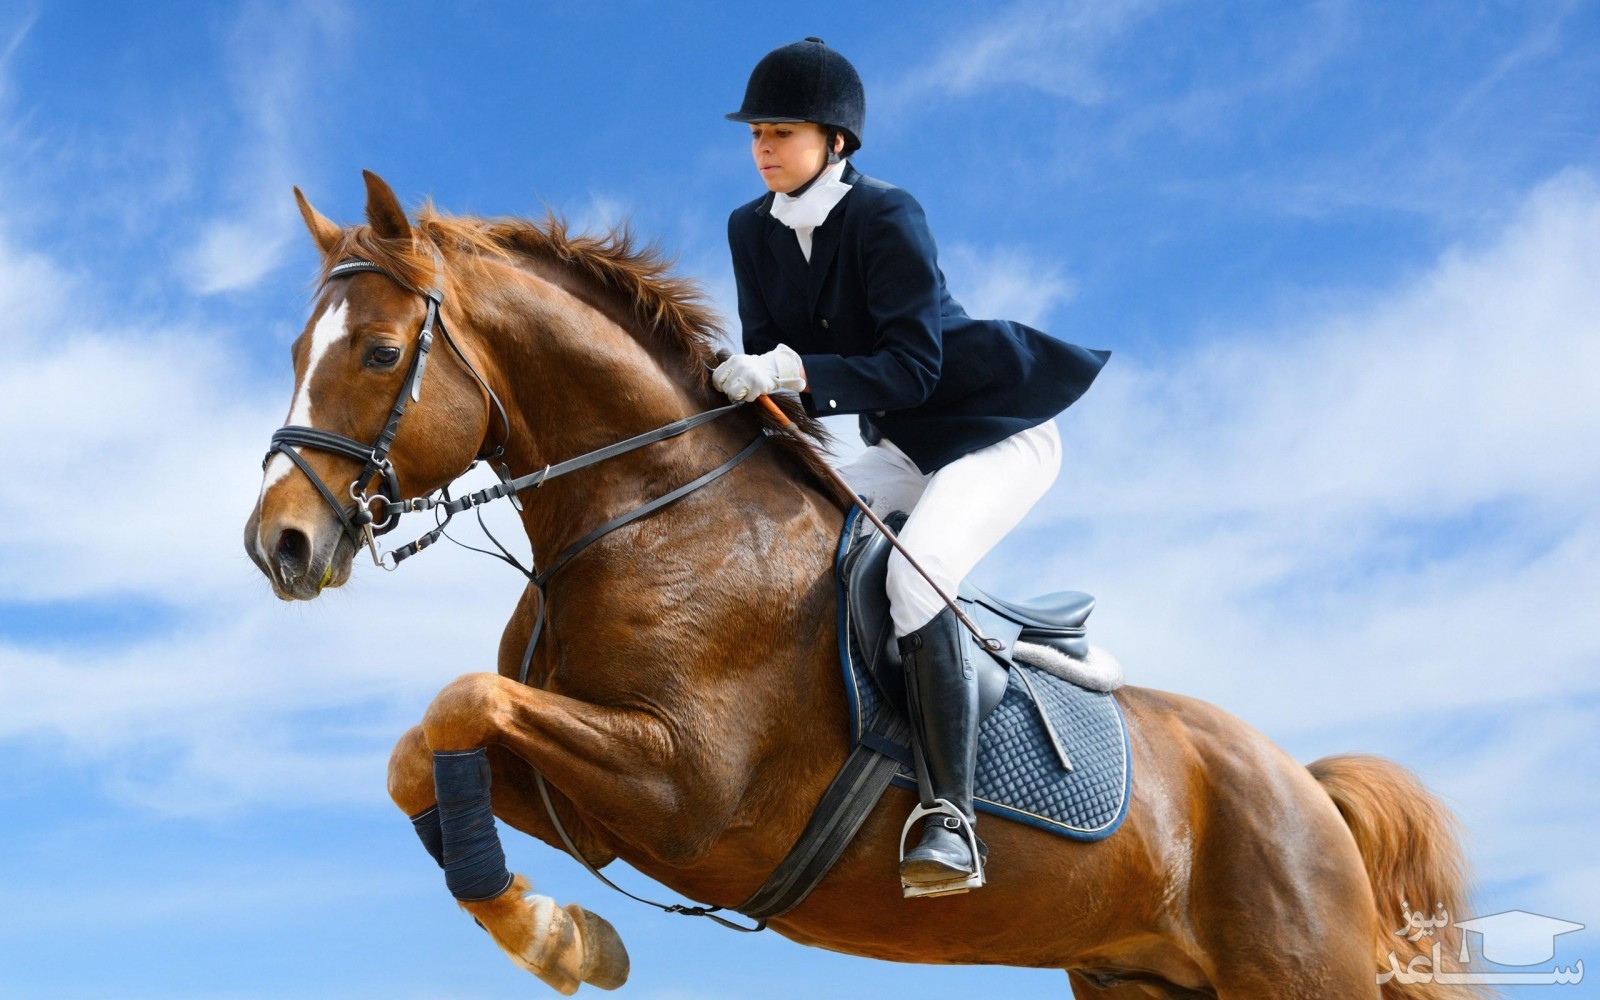 آشنایی با ورزش اسب سواری + فواید و مضرات این ورزش